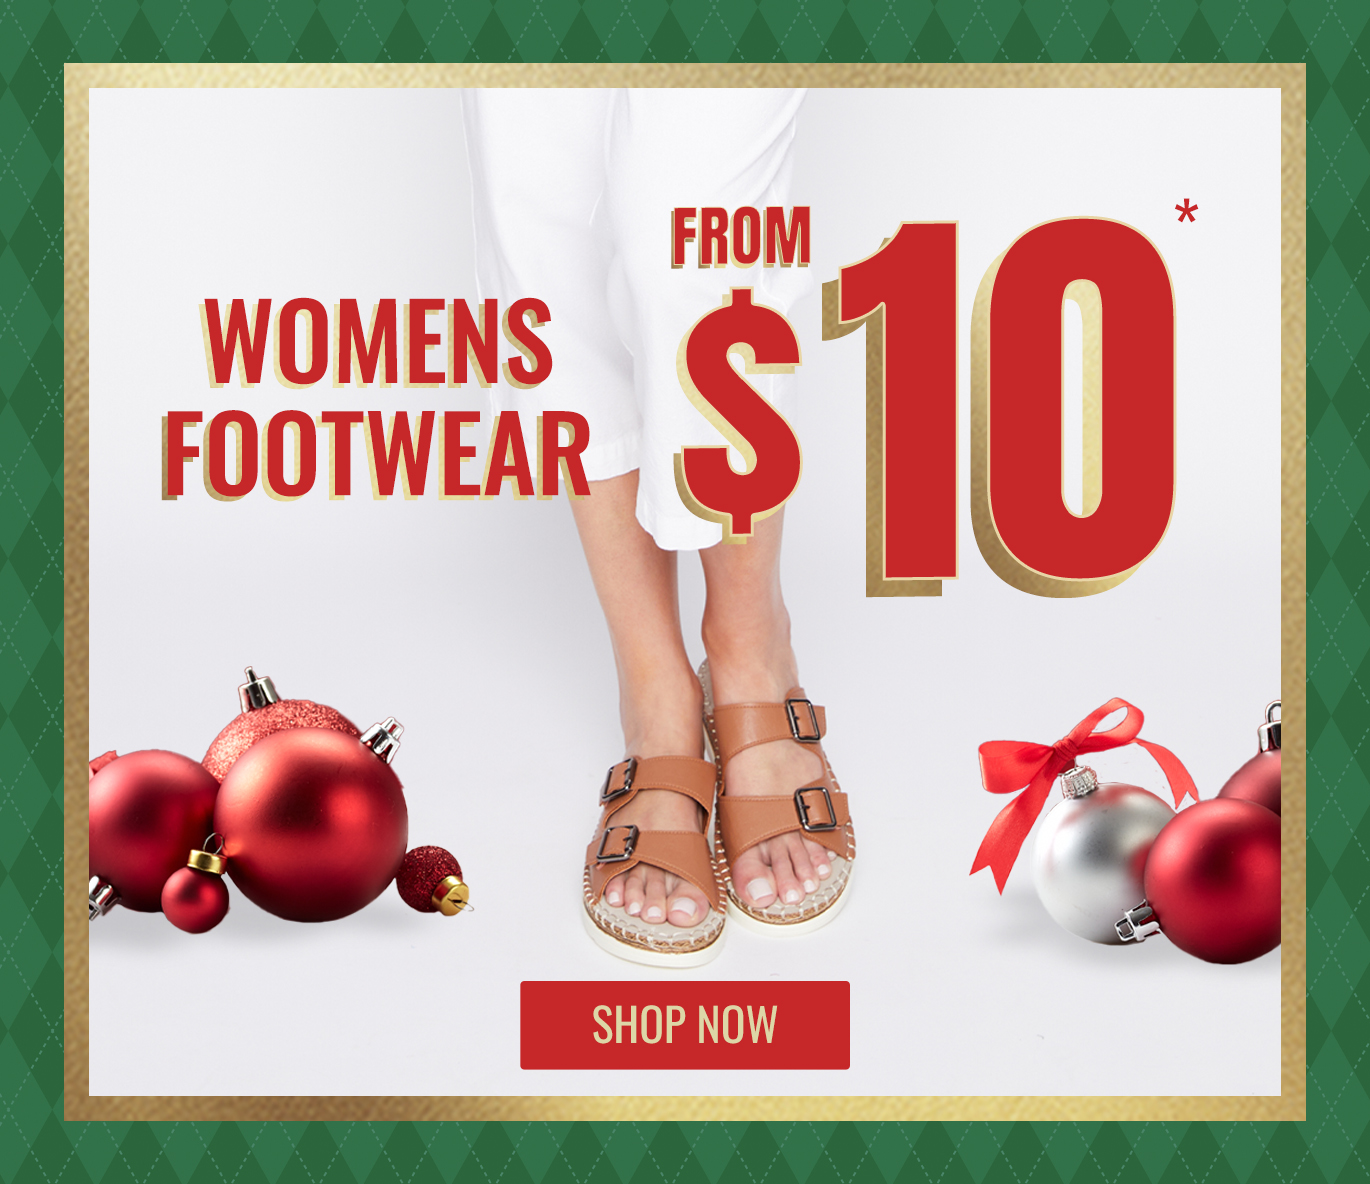 Rivers Womens Footwear form $10*